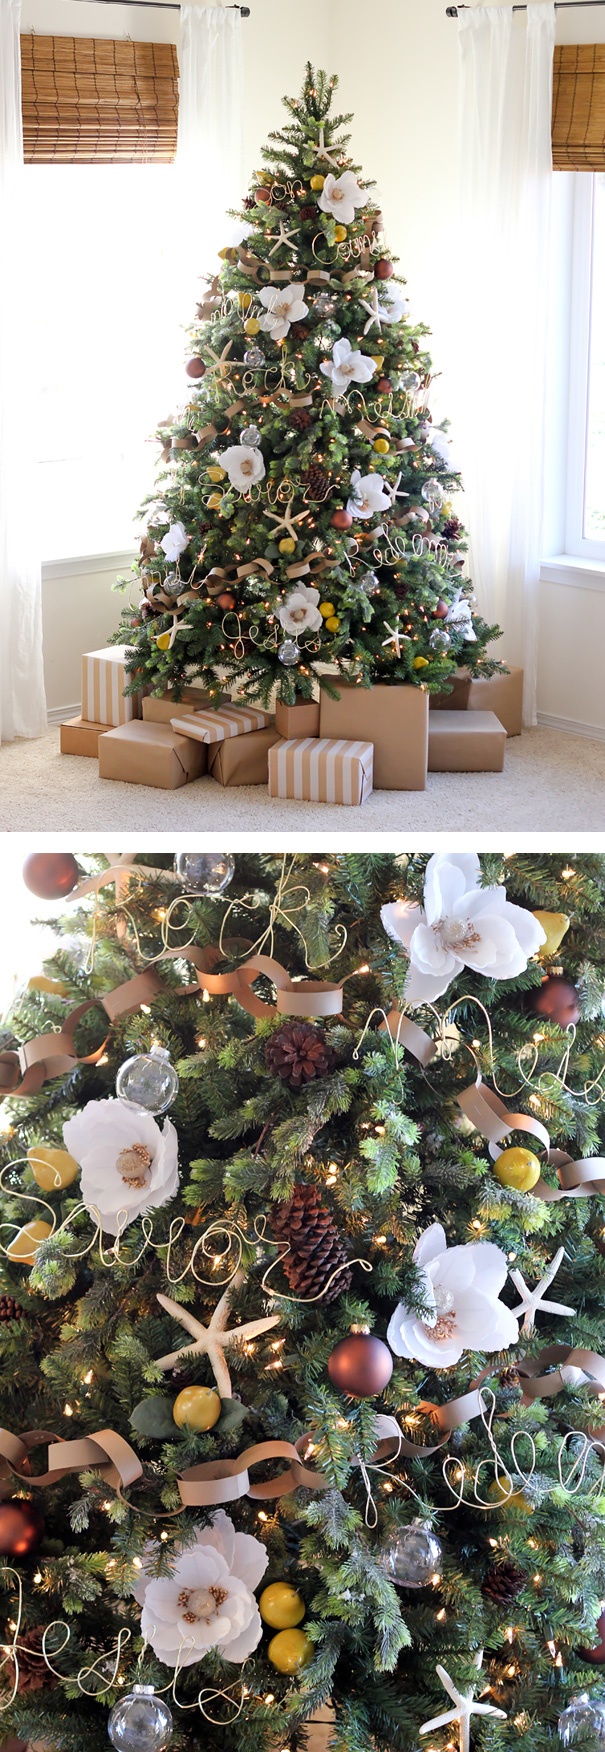 La última moda es decorar el árbol de Navidad con flores y queda precioso |  Bored Panda